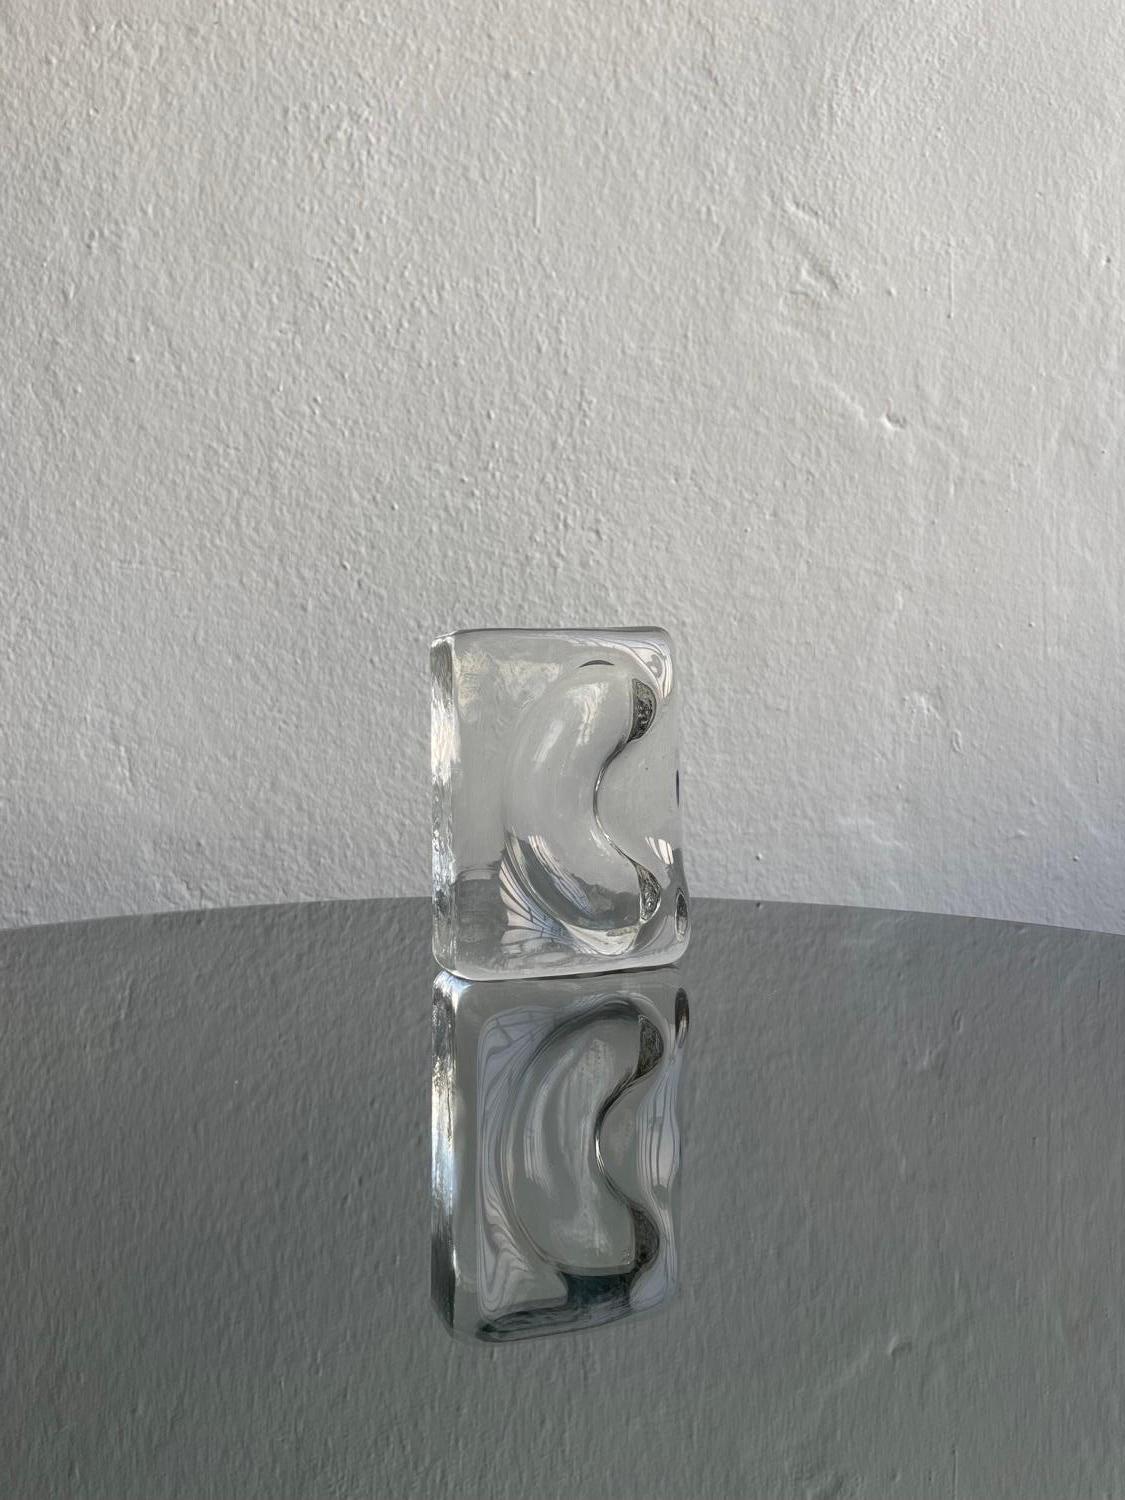 Dekoratives Glastablett - Tablett aus Murano-Glas - Skulptur aus Glas zum Sammeln

Dekoratives Vintage-Tablett aus dickem und schwerem Murano-Glas, hergestellt aus klarem Glas und geprägt in einer rechteckigen Form mit einer gebogenen Rille in Form